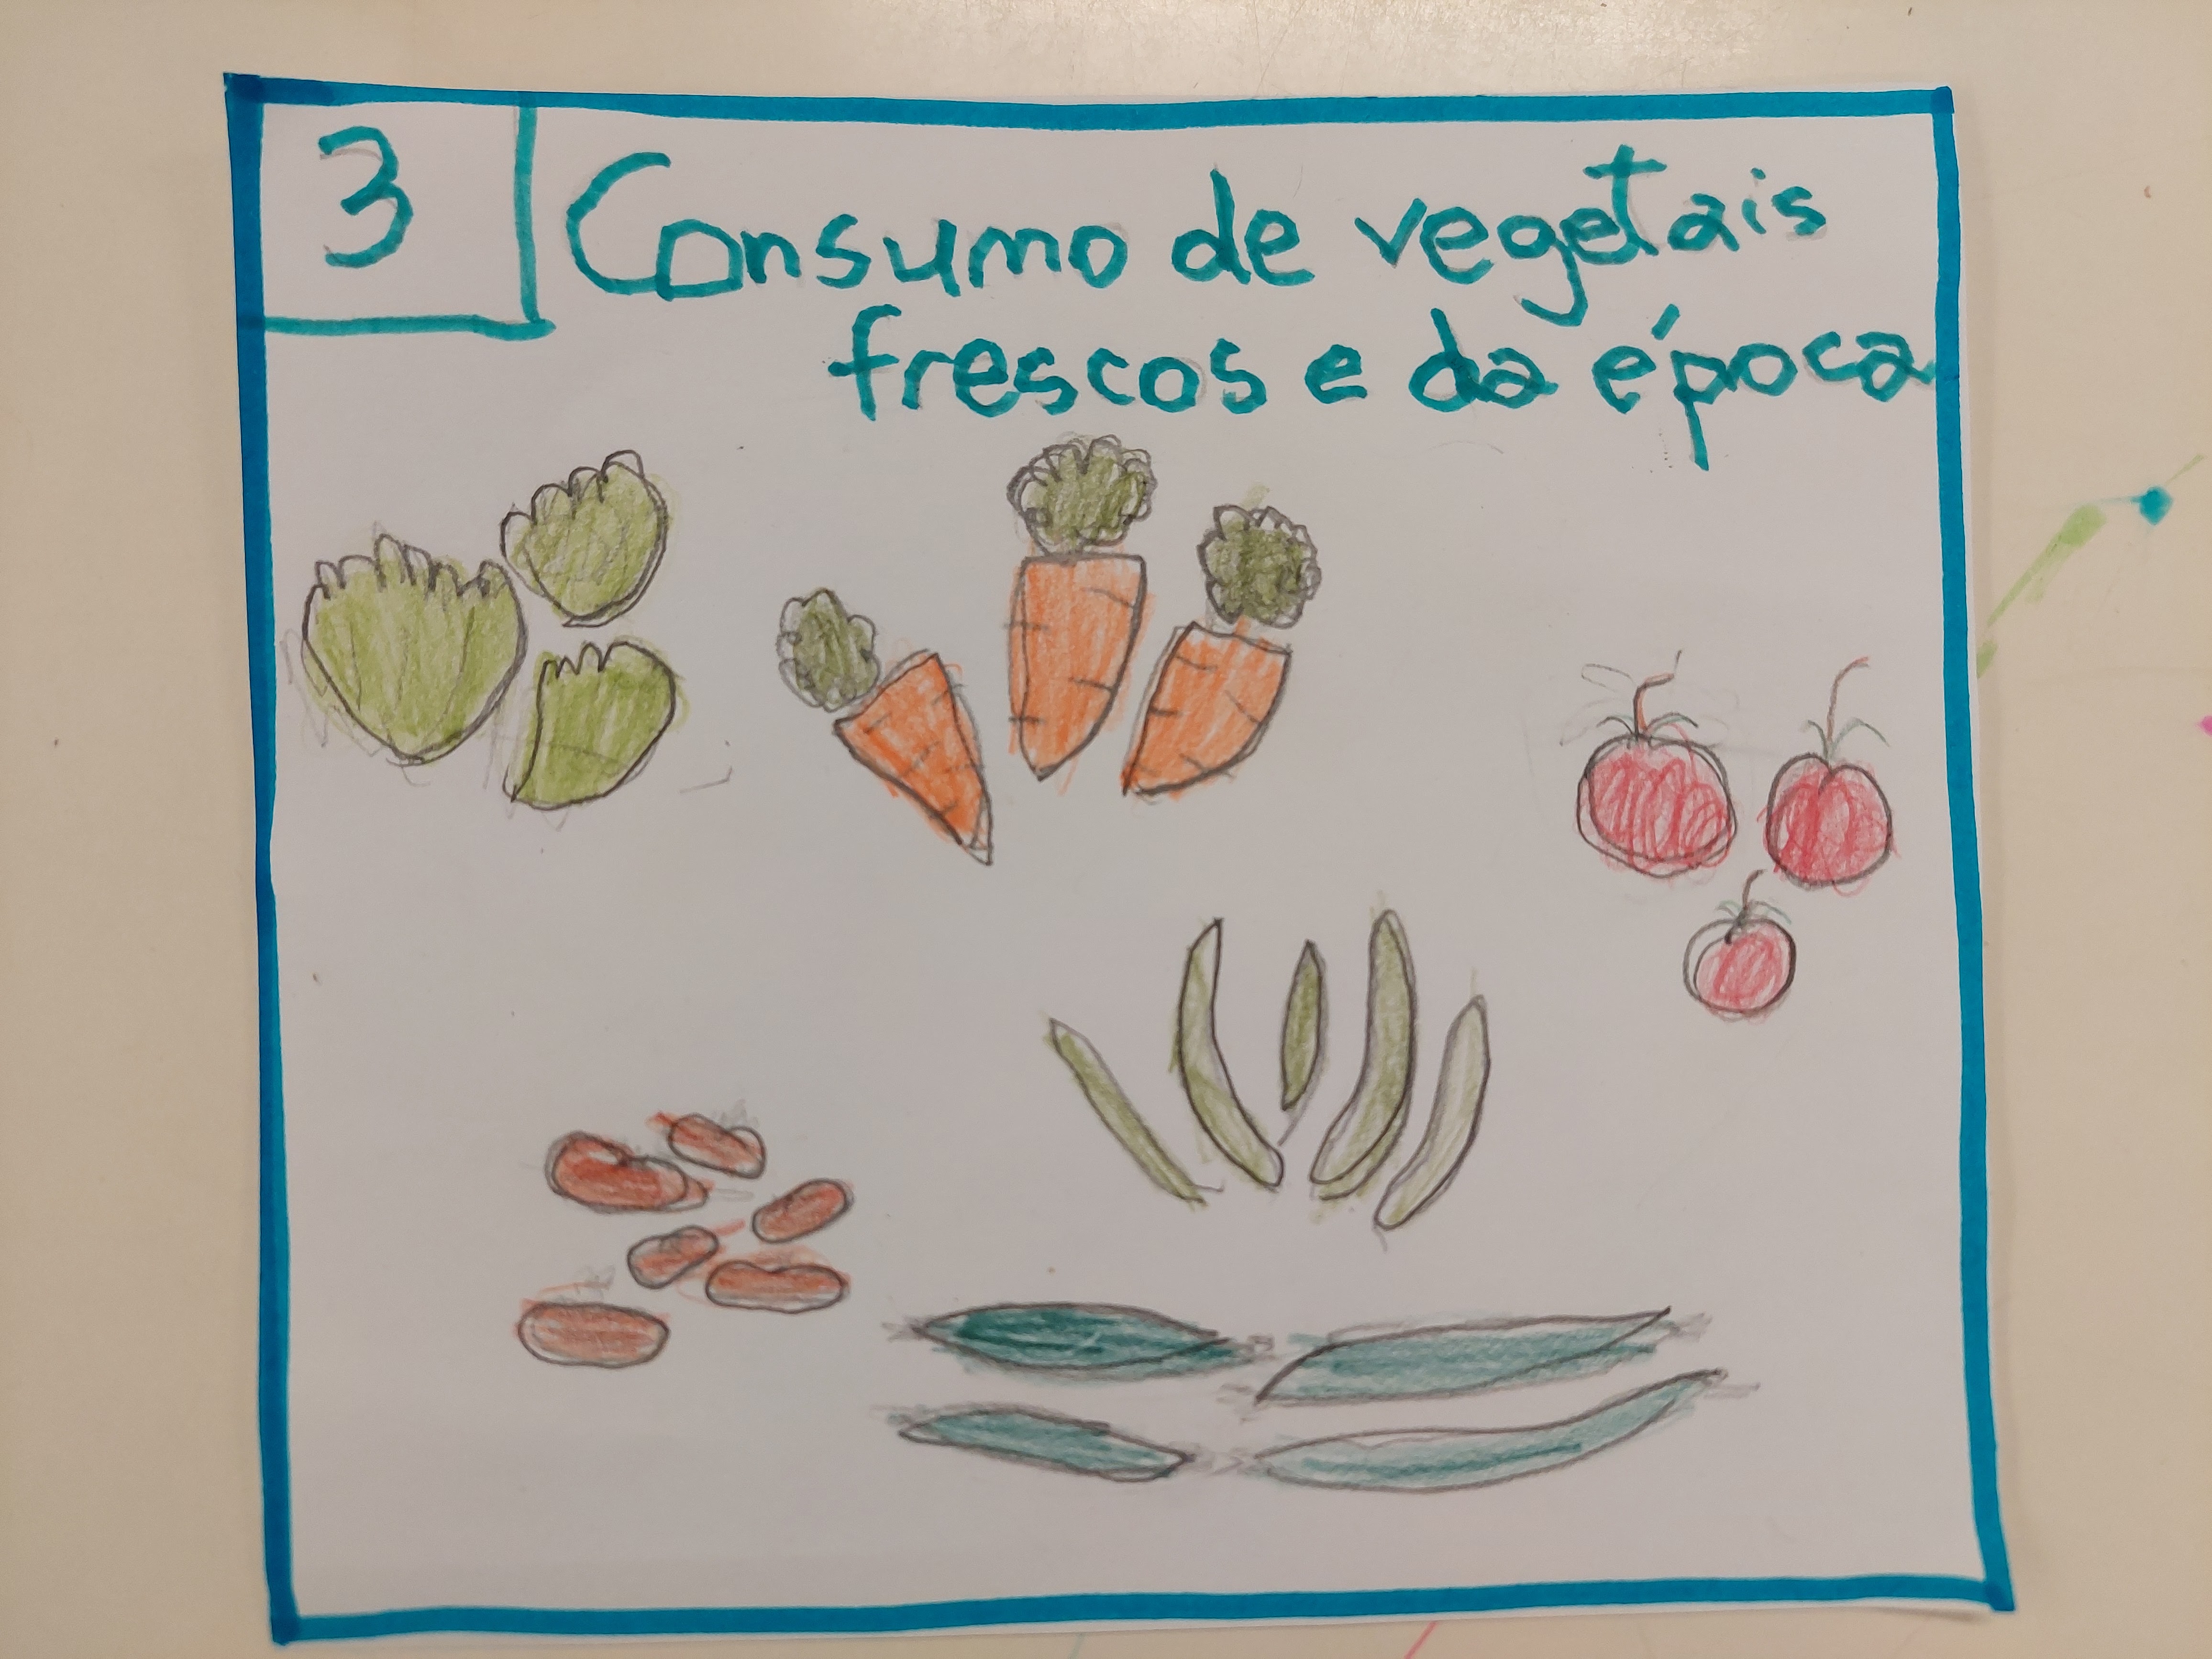 3 - Consumo de vegetais frescos e da época